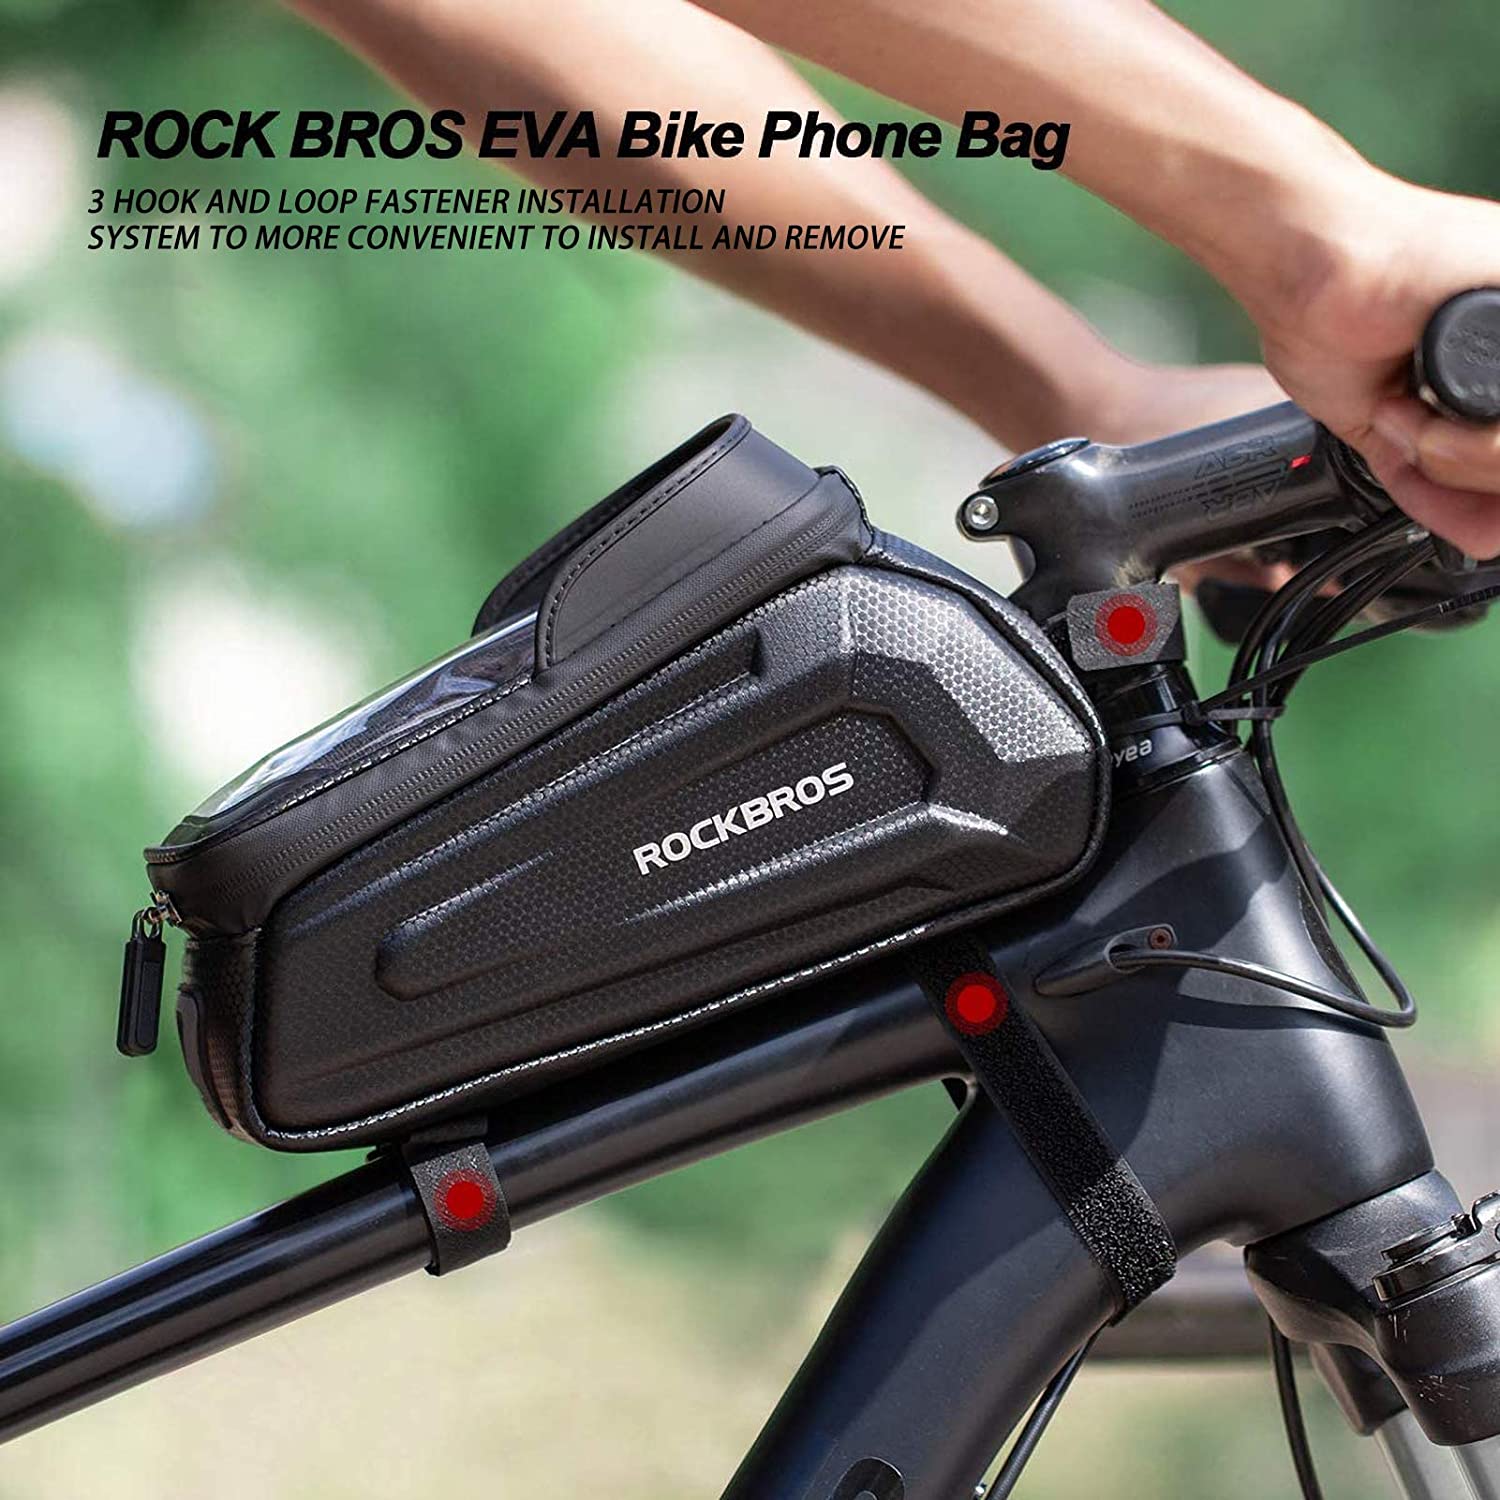 ROCKBROS Bike Phone Mount Bag,EVA Waterproof Front Frame Bag Compatibl